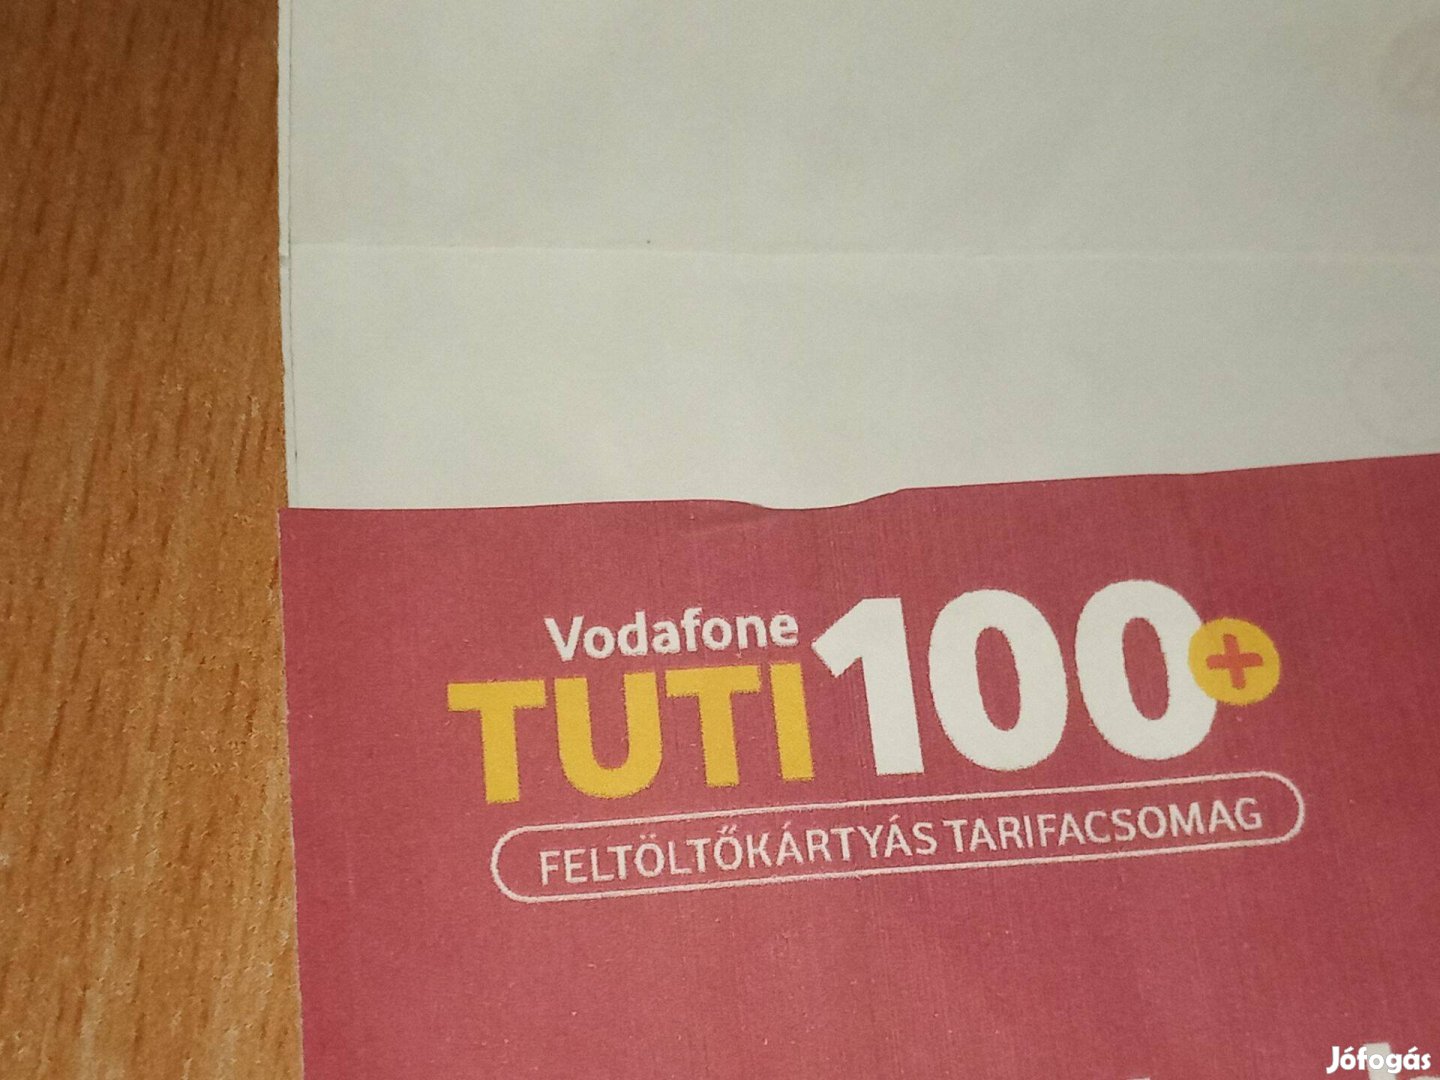 Vodafone Tuti100+ feltöltőkártya 2000ft óbuda